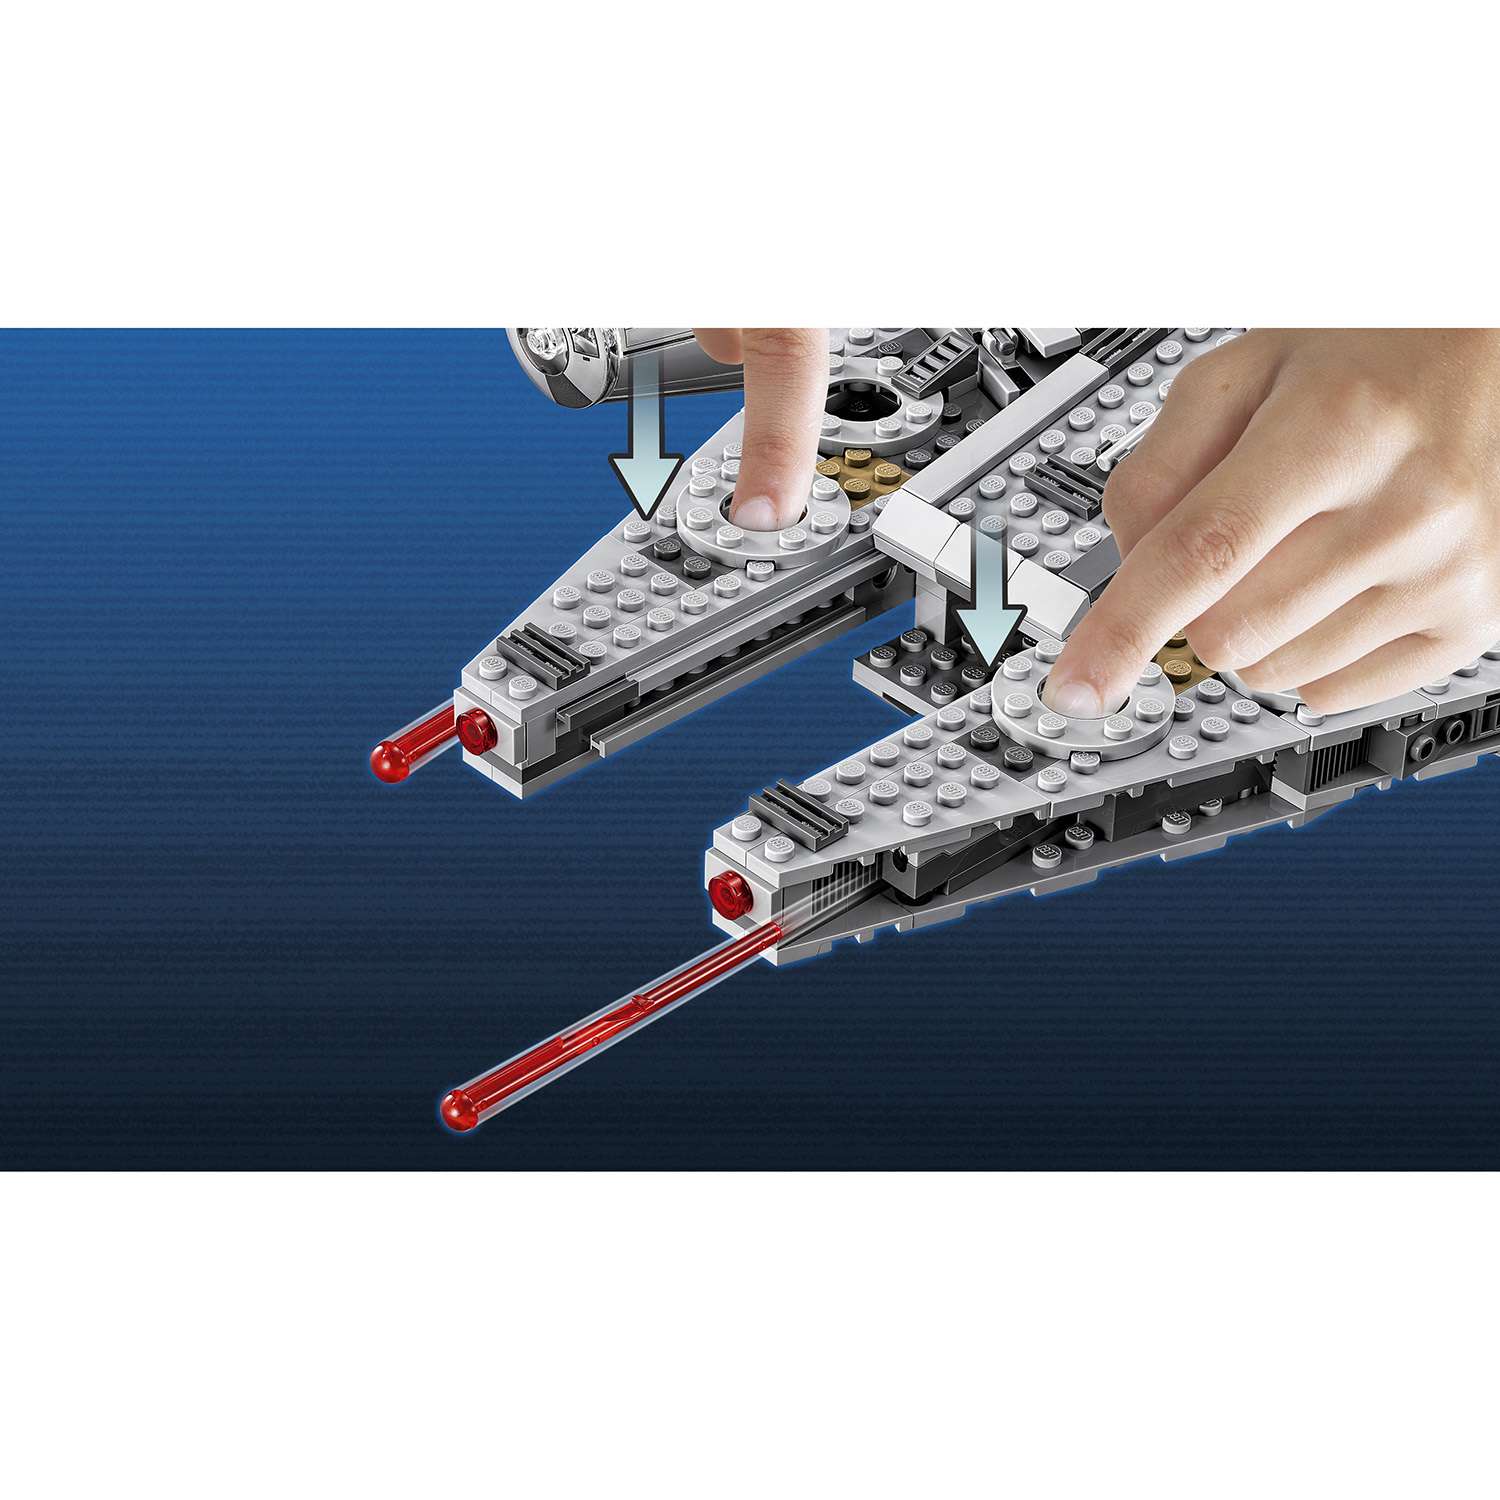 Конструктор LEGO Star Wars TM Сокол Тысячелетия (Millennium Falcon™) (75105) - фото 7